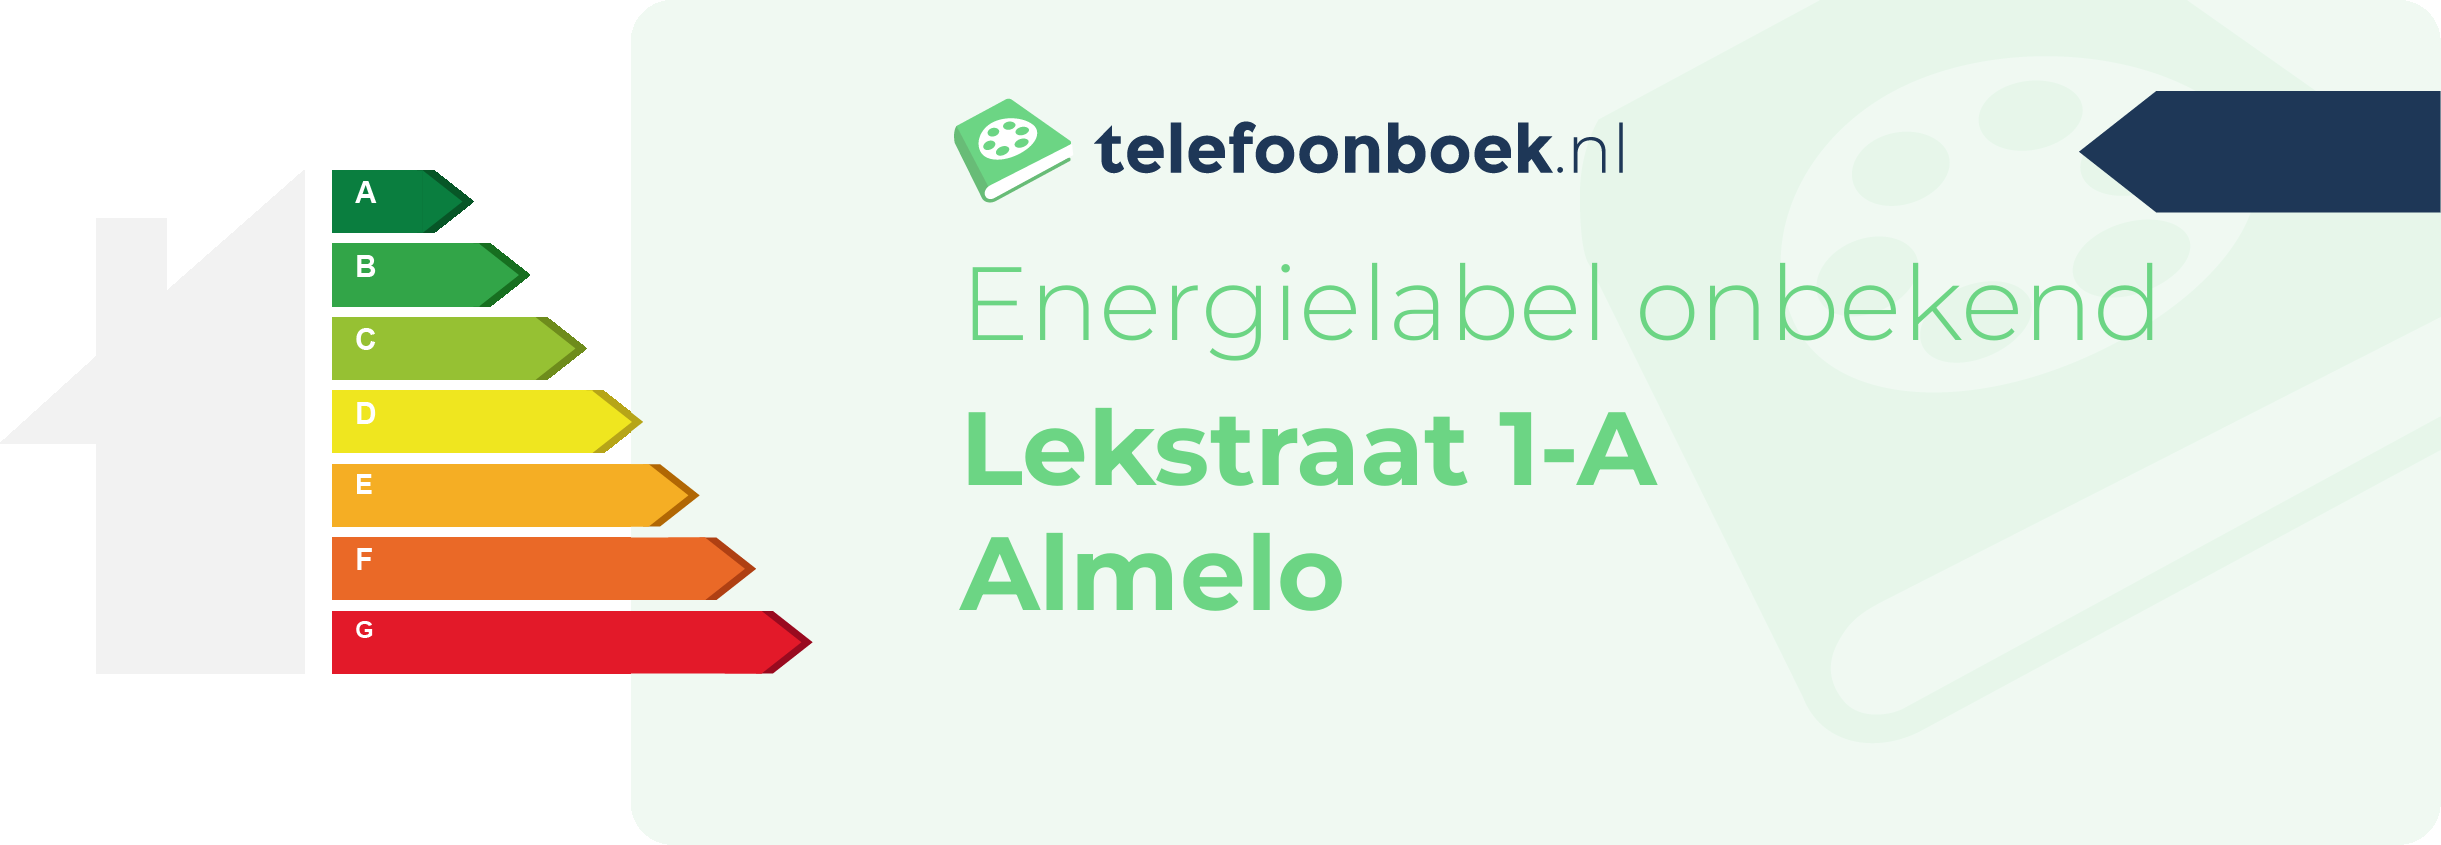 Energielabel Lekstraat 1-A Almelo